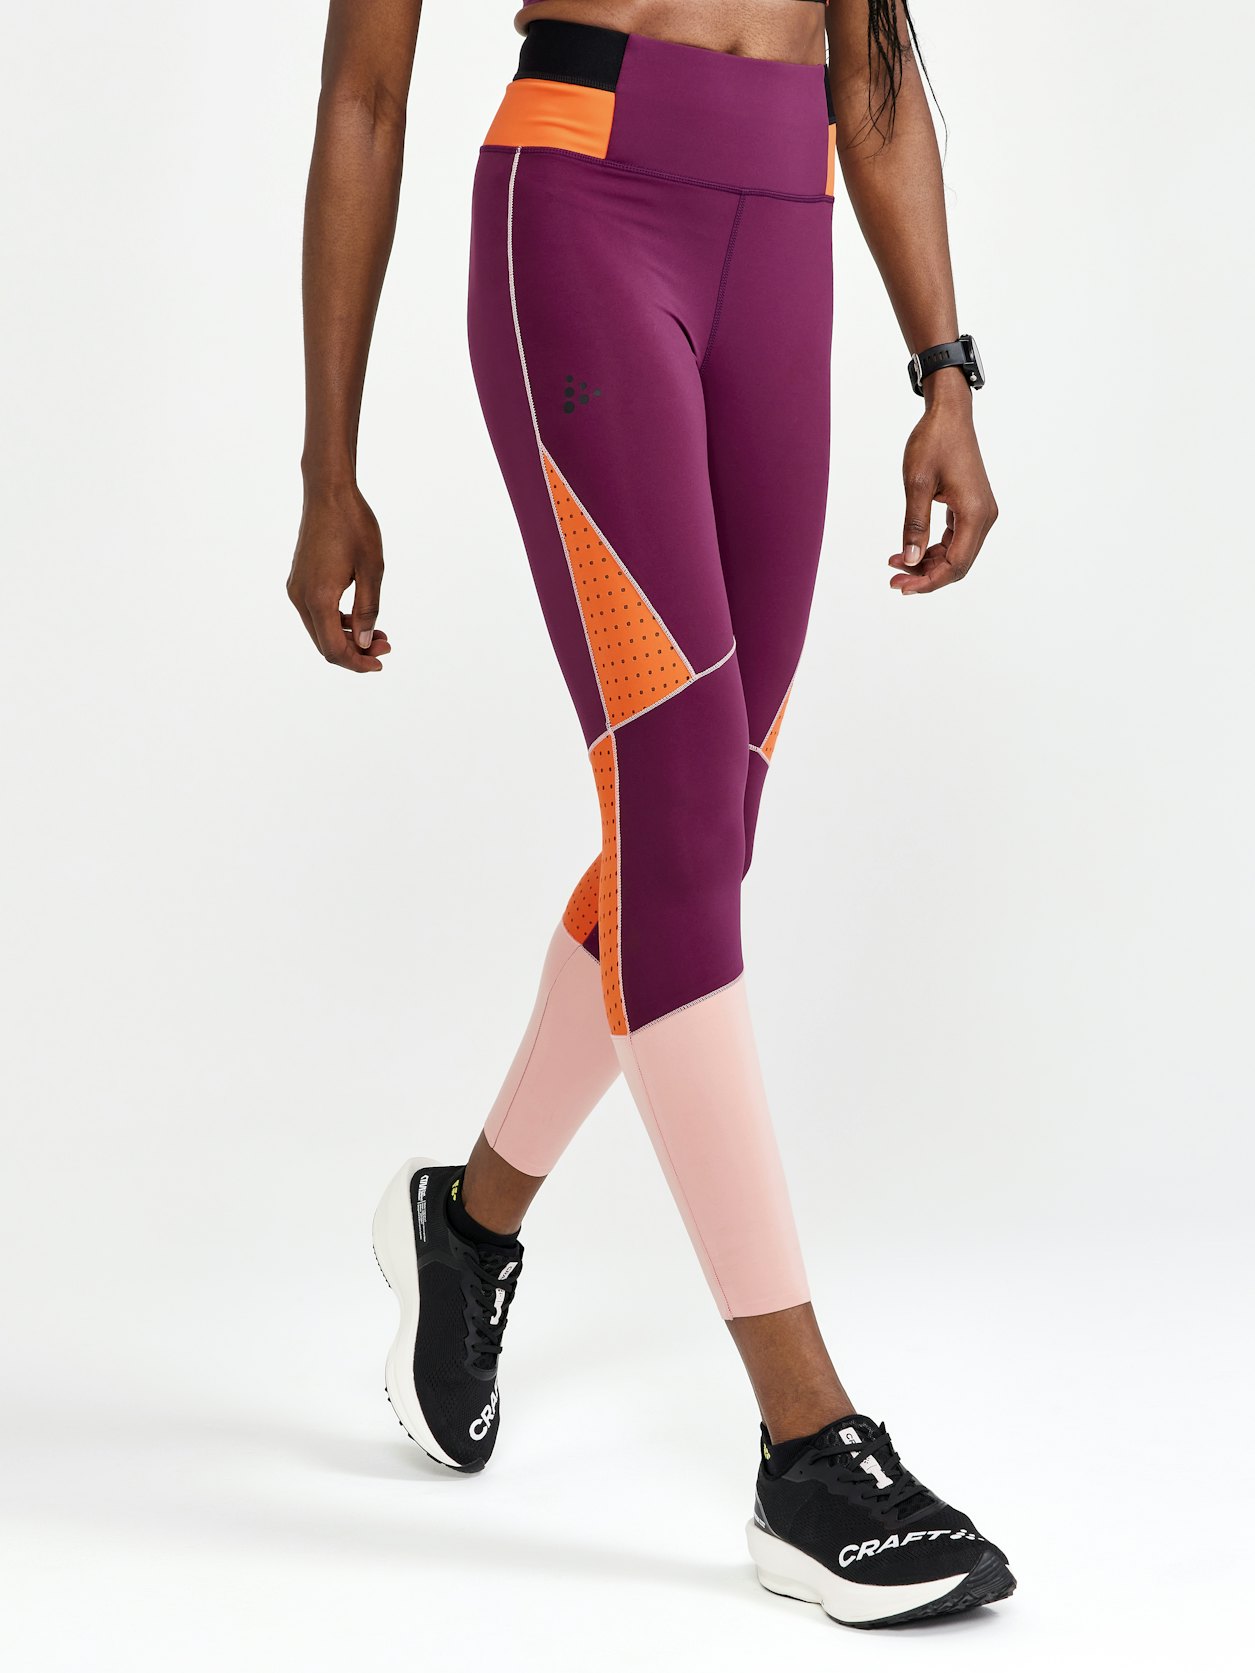 Nike Pro Training high waist 7/8 leggings in navy